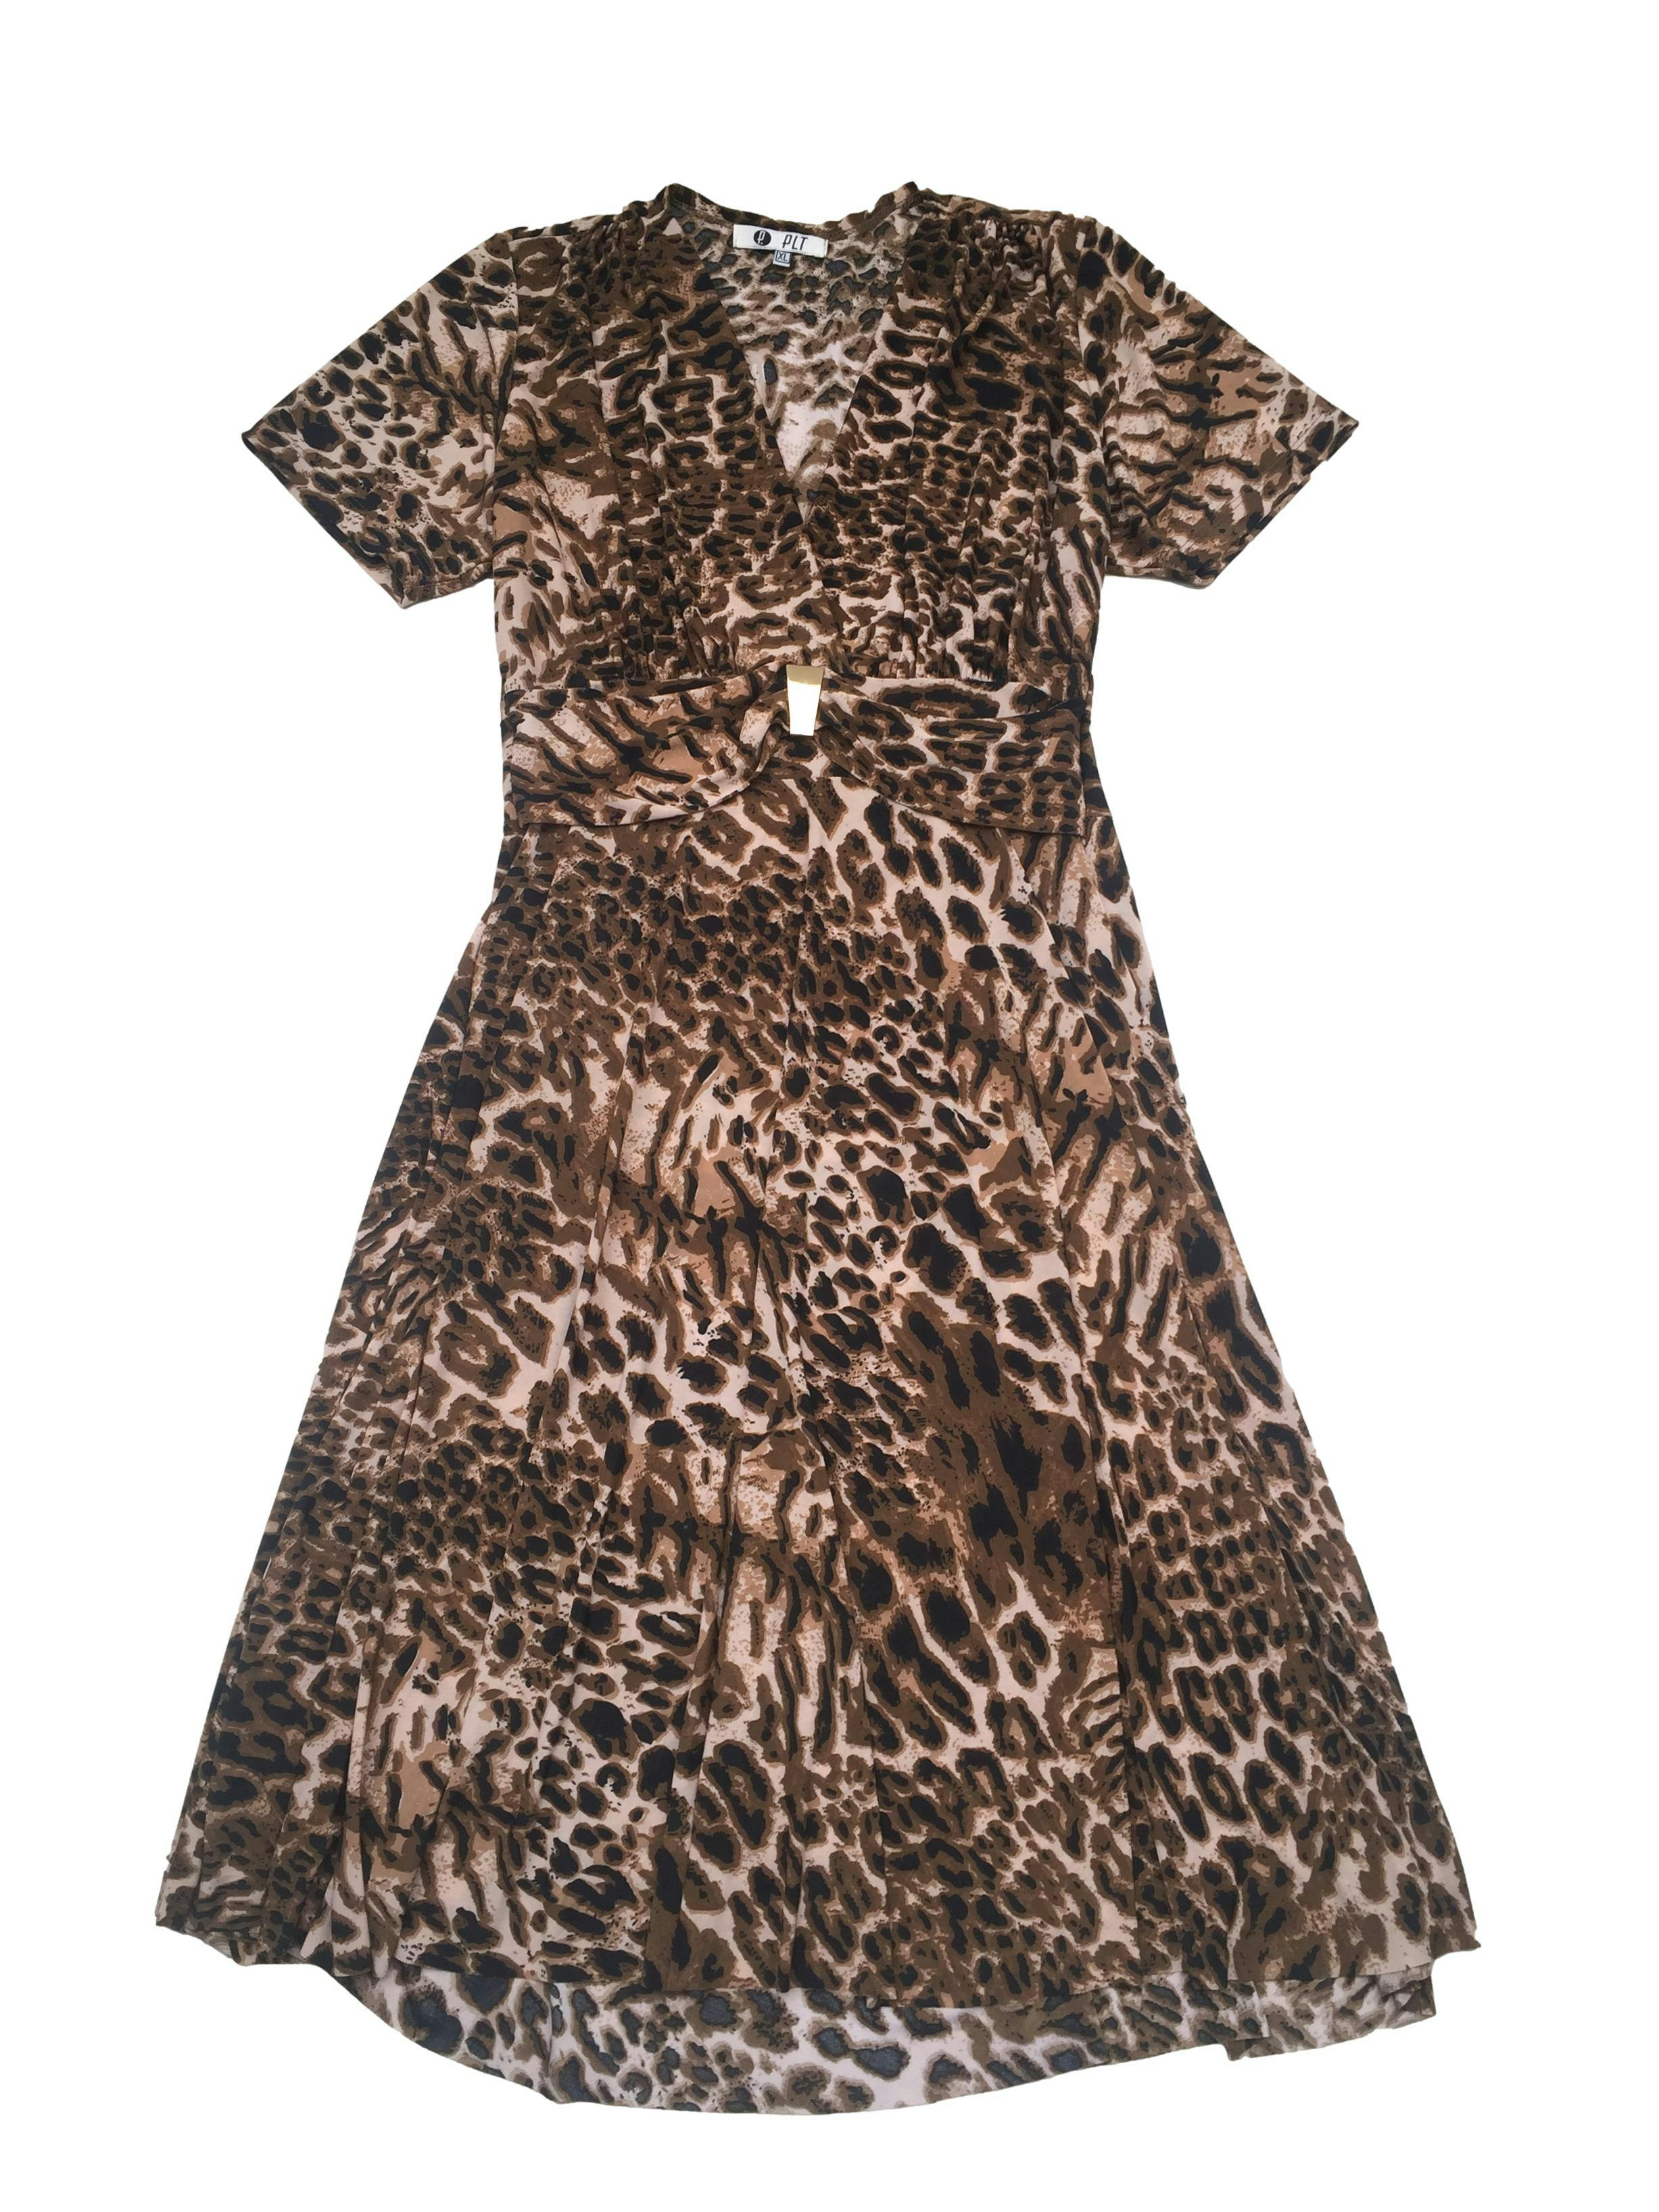 Vestido PLT Animal Print tela fresca tipo lycra, corte en A con escote cruzado y cintos con pieza metálica. Busto100cm, Largo 105cm.